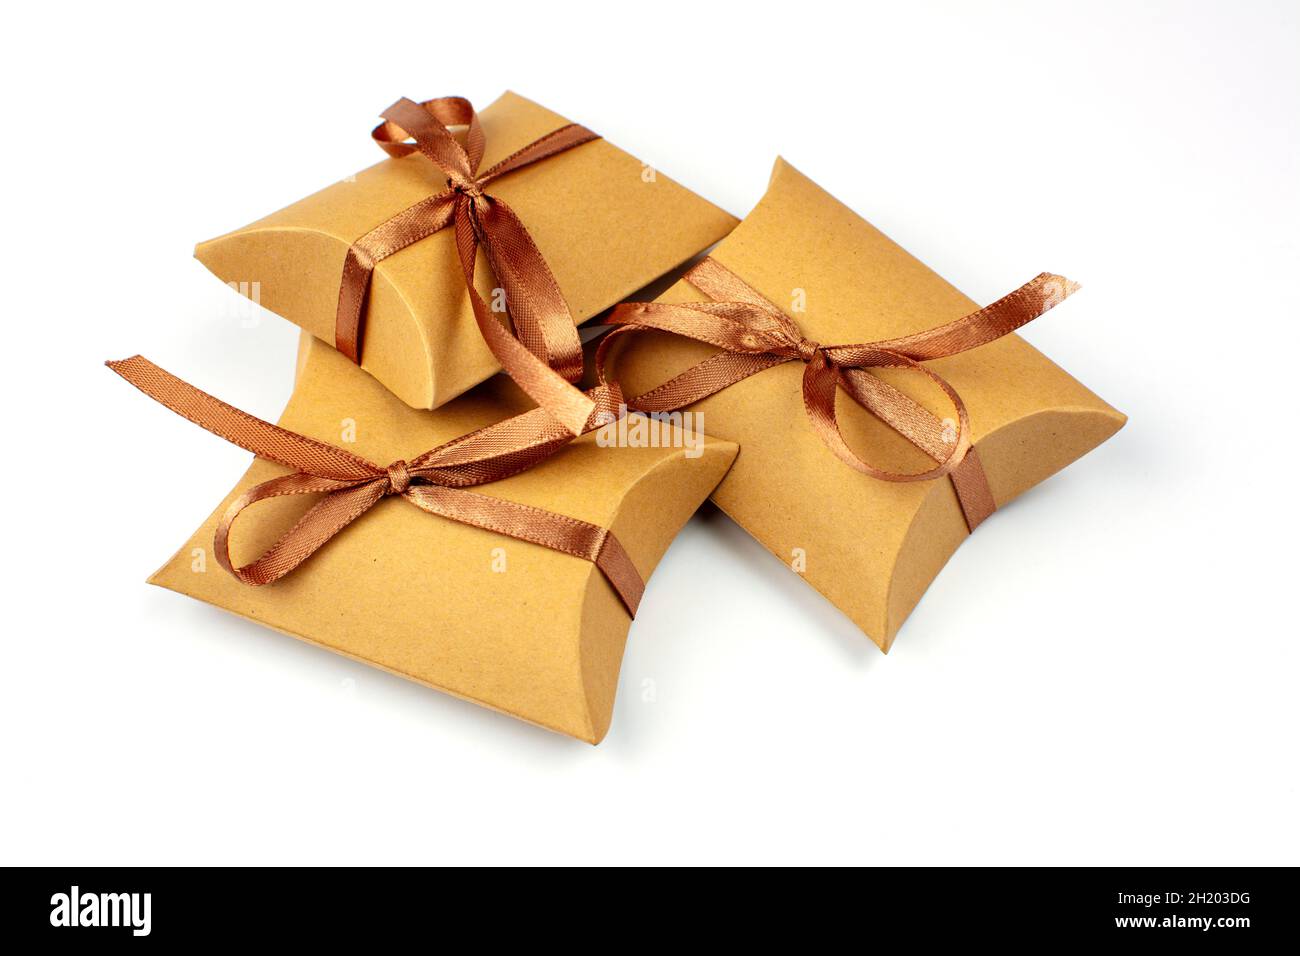 Pequeños regalos en una caja de cartón natural. La caja de artesanía está  atada con una cinta de satén marrón. Grupo de regalos, espacio de copia.  Cajas de regalo con reciclado Fotografía